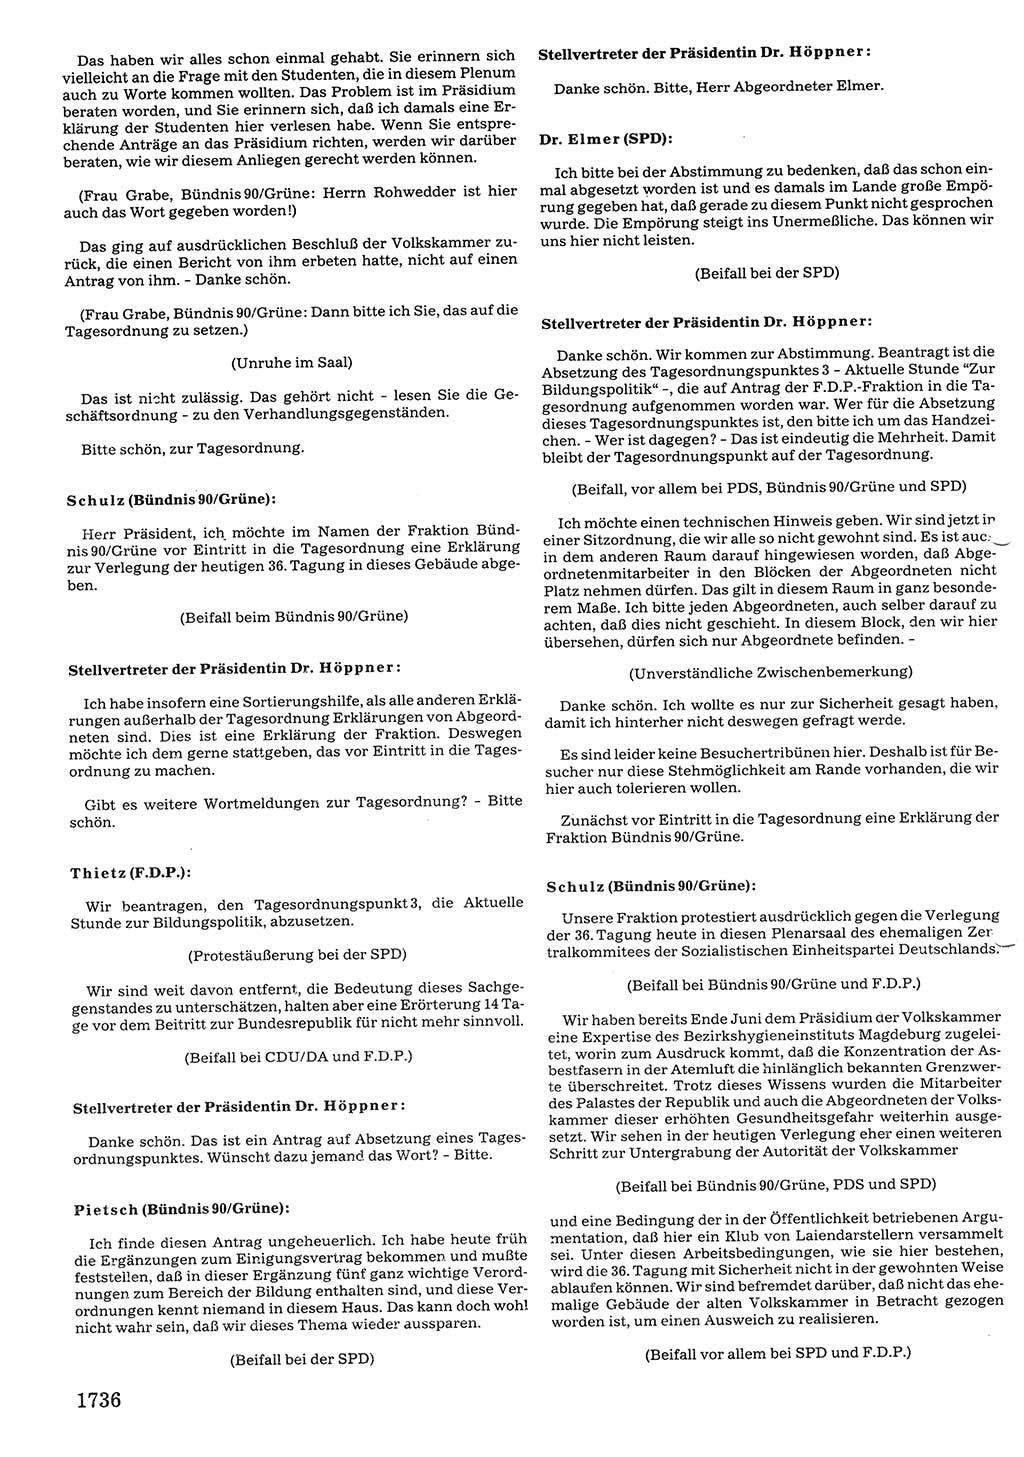 Tagungen der Volkskammer (VK) der Deutschen Demokratischen Republik (DDR), 10. Wahlperiode 1990, Seite 1736 (VK. DDR 10. WP. 1990, Prot. Tg. 1-38, 5.4.-2.10.1990, S. 1736)